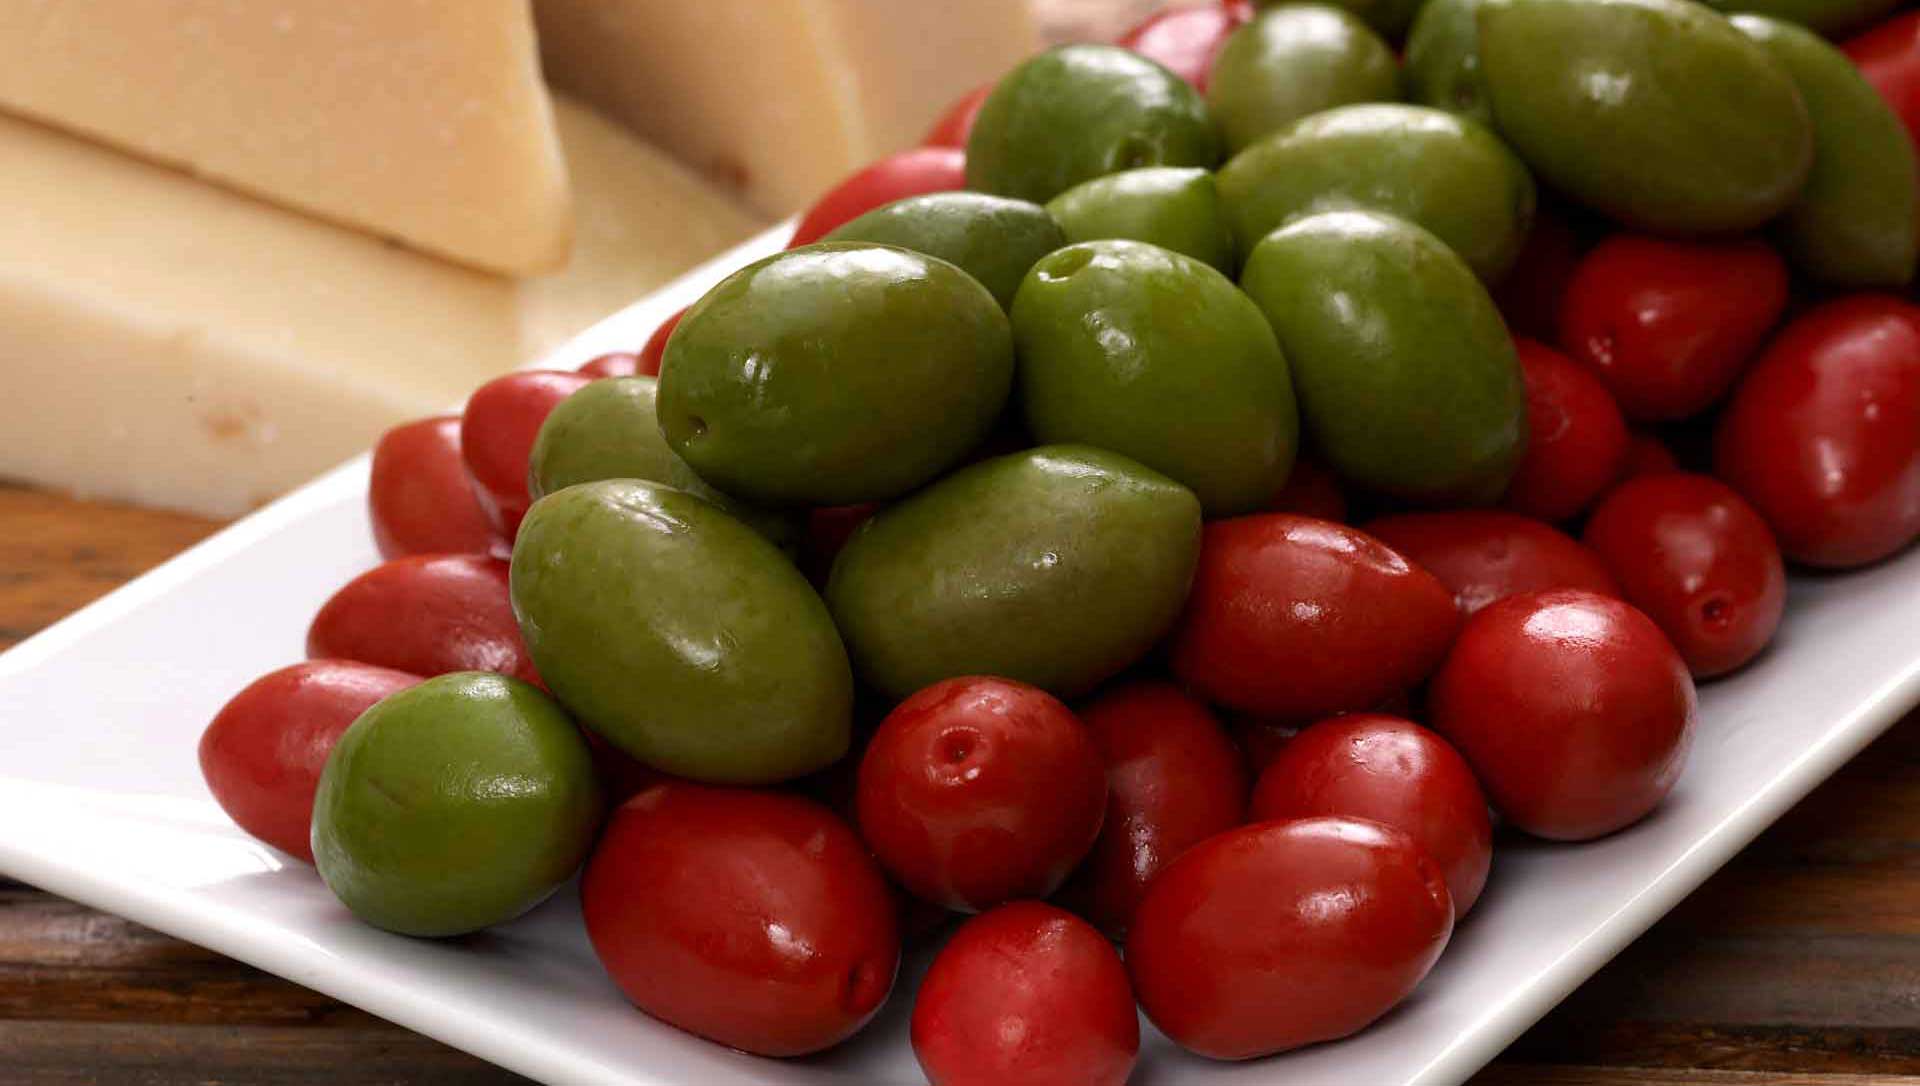 Paesana mixed olives